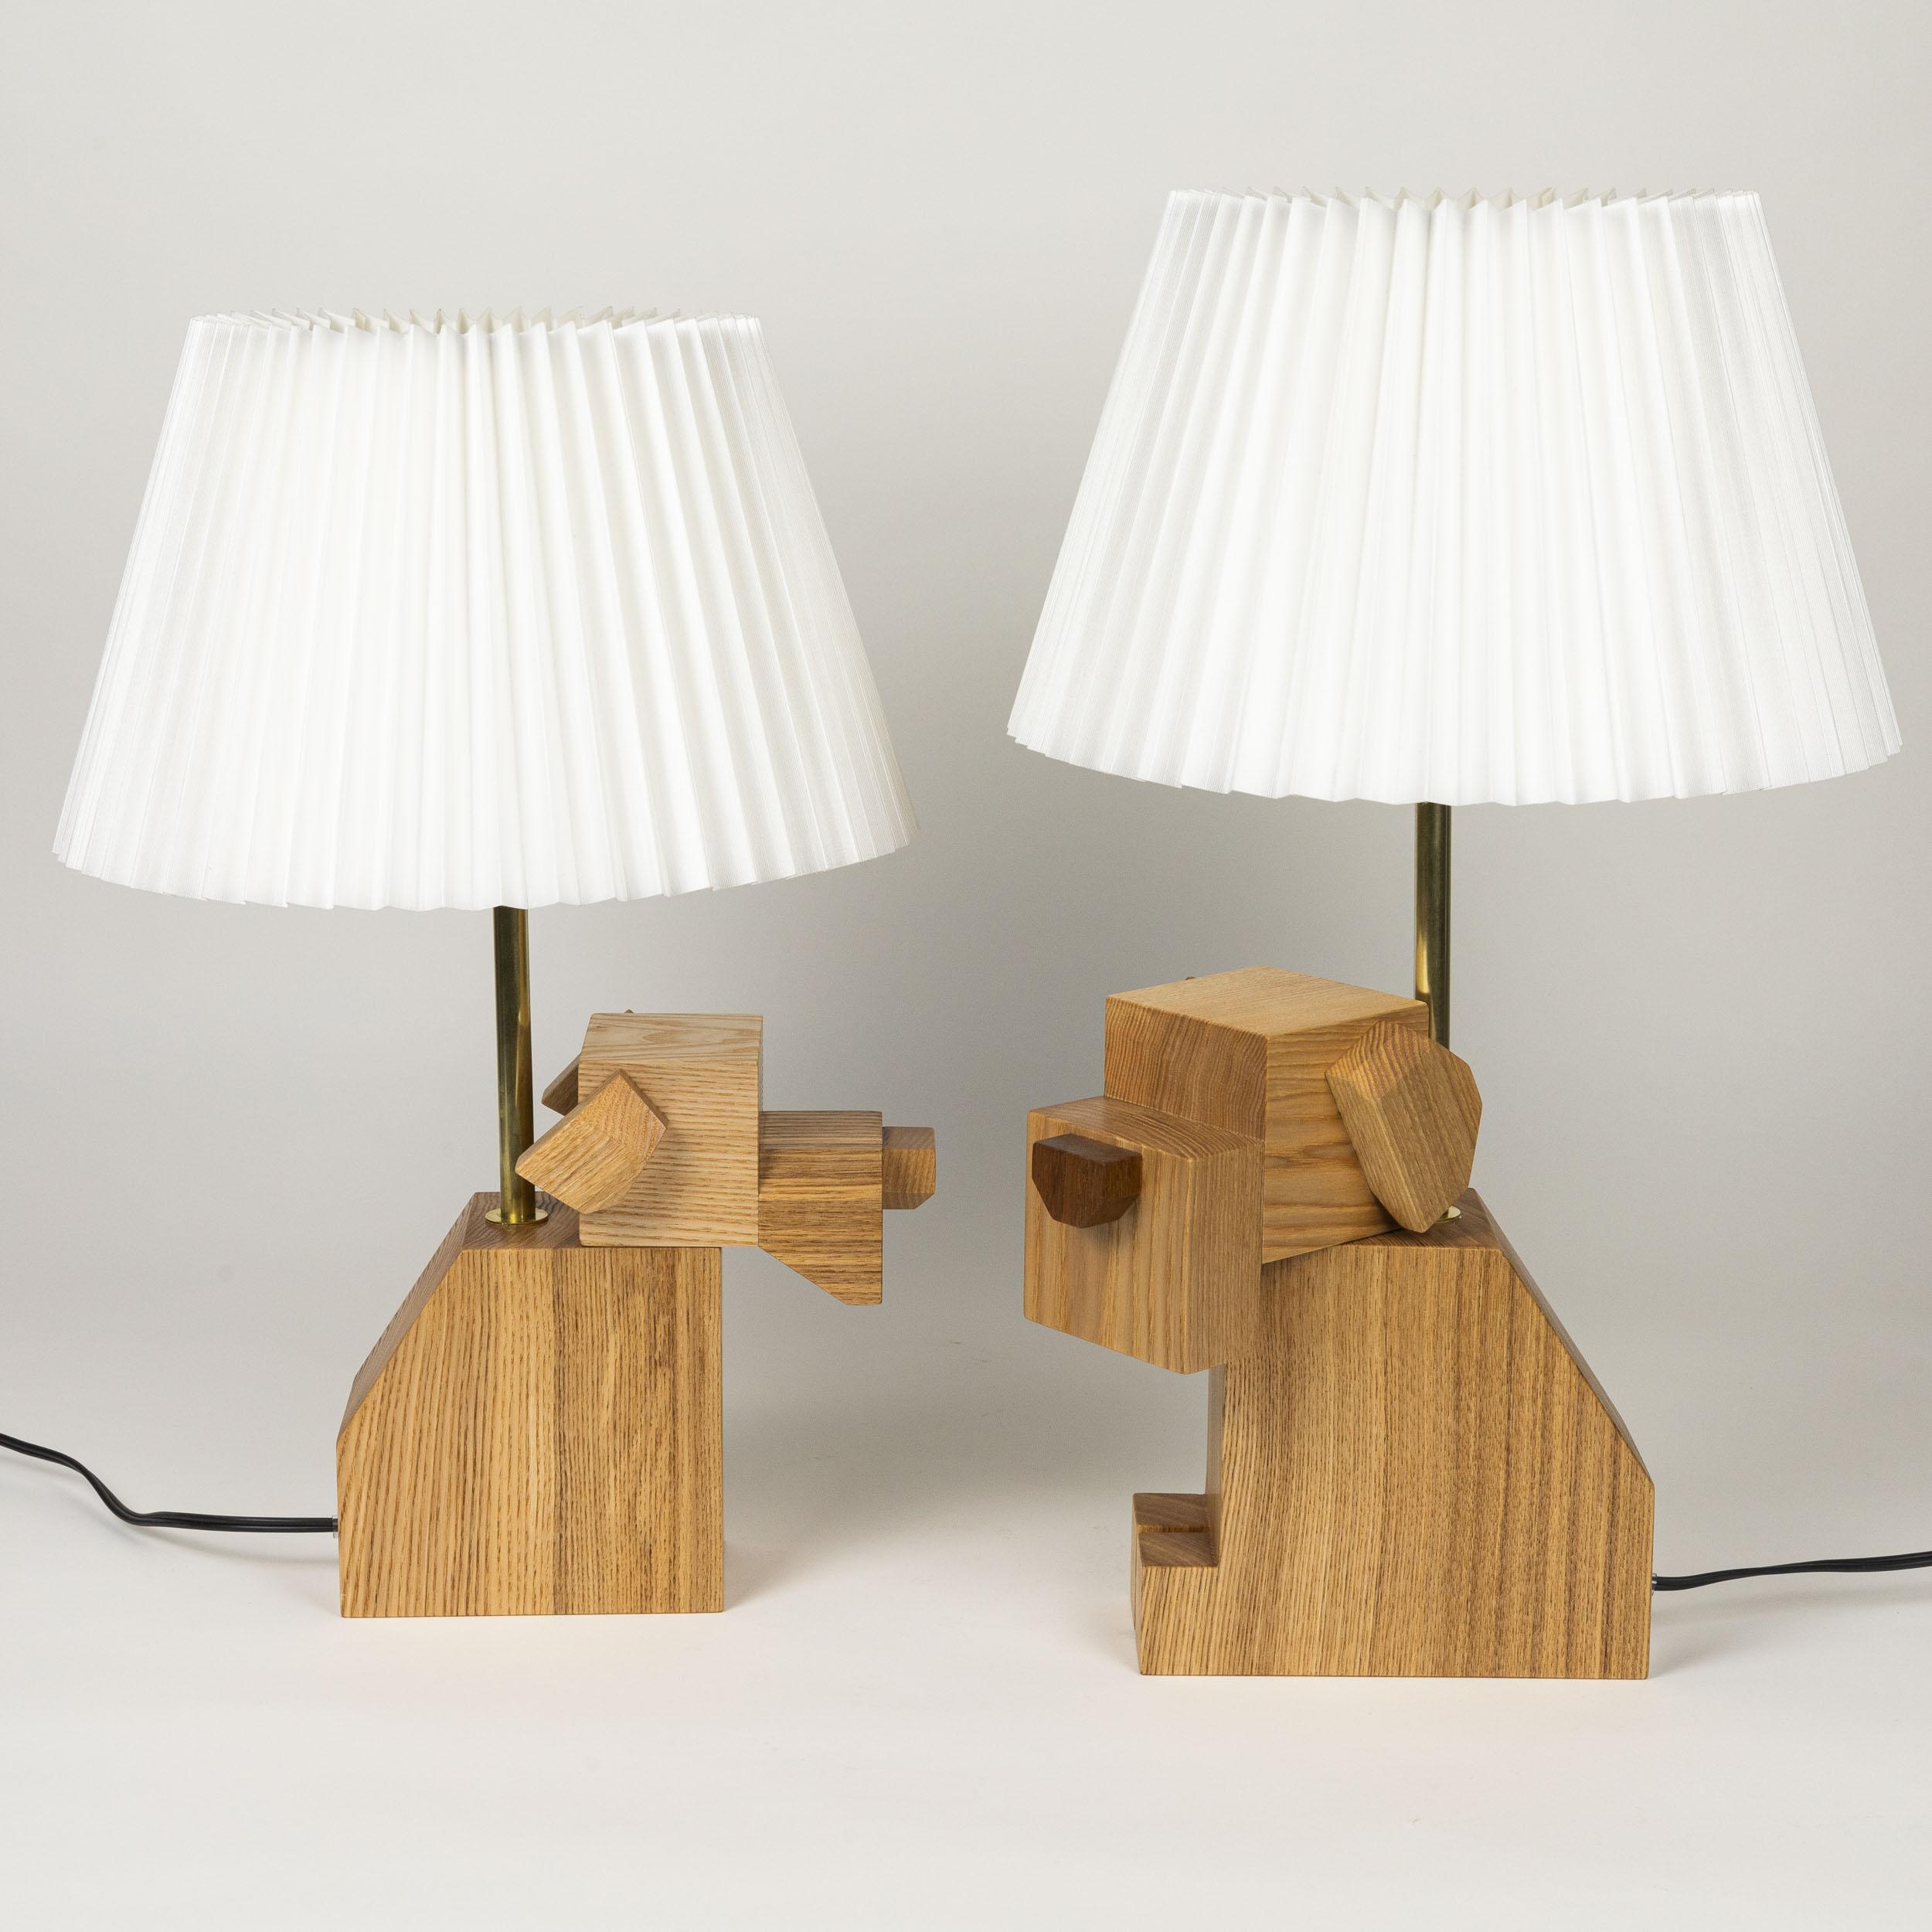 Fait main Paire de lampes de table en bois avec abat-jour en tissu blanc, fabriquées à la main, bois dur en vente